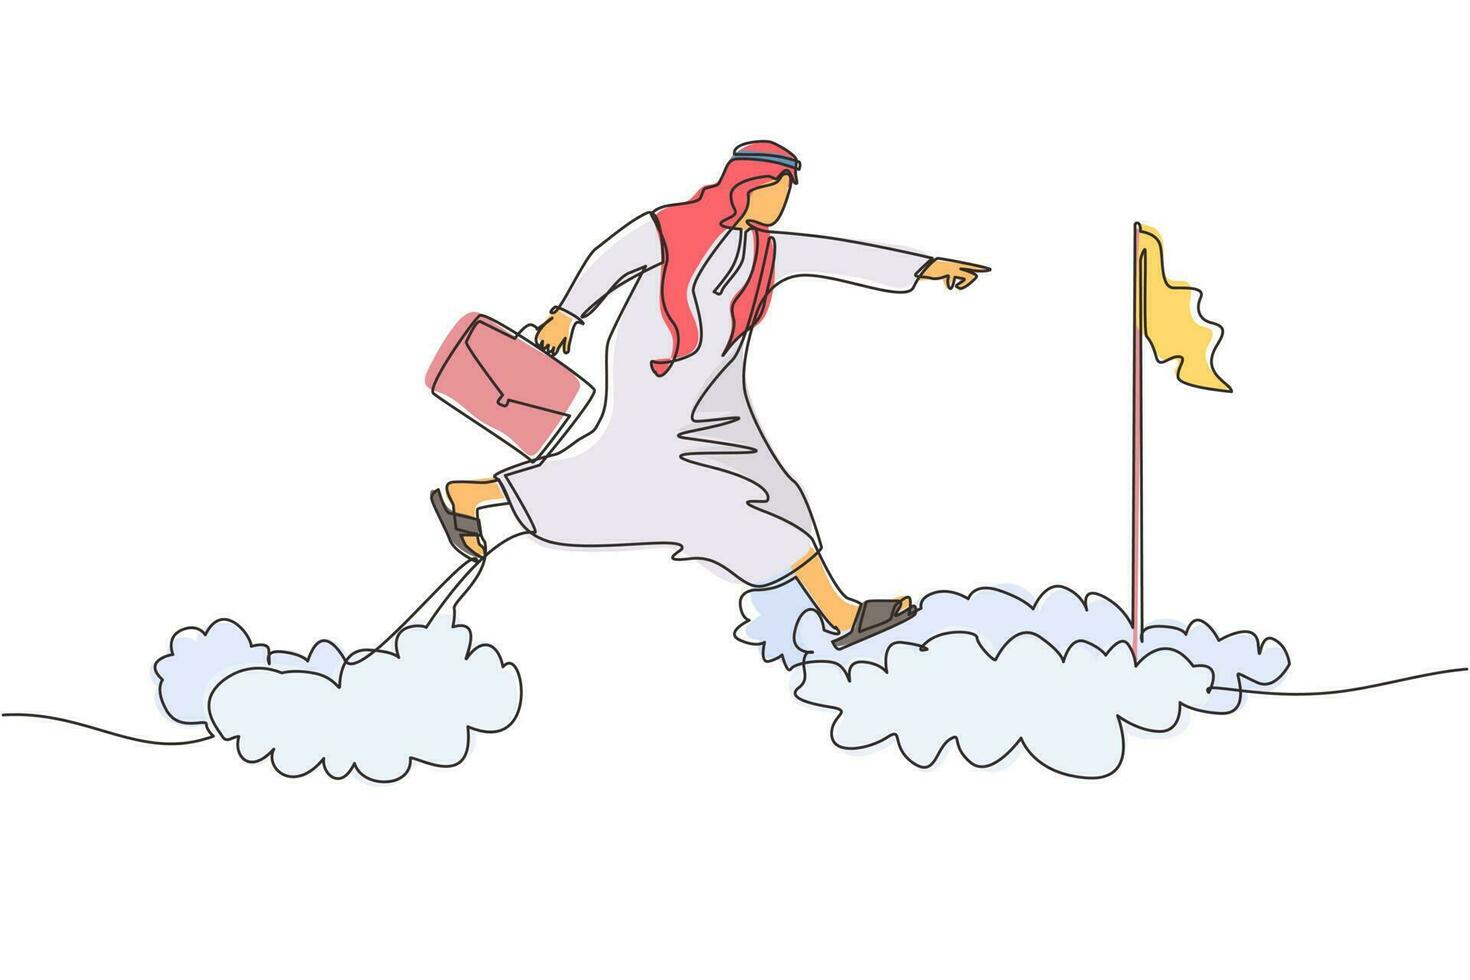 dibujo continuo de una línea audaz y valiente hombre de negocios árabe se arriesga saltando sobre las nubes para alcanzar su objetivo o bandera de éxito. desafío de su carrera. ilustración gráfica de vector de diseño de línea única